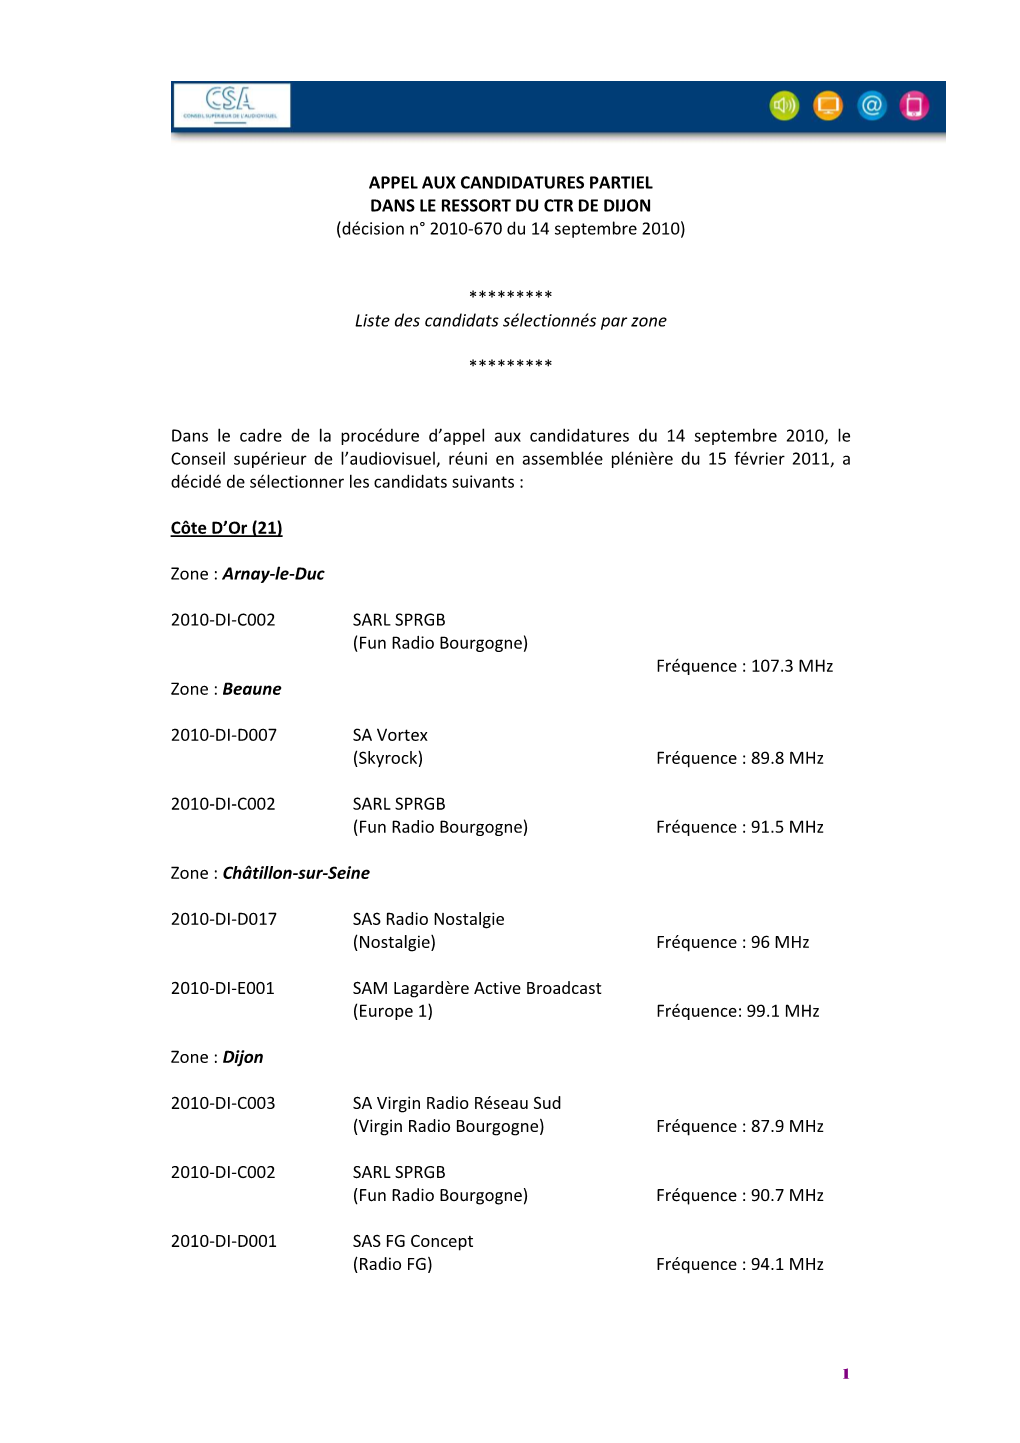 APPEL AUX CANDIDATURES PARTIEL DANS LE RESSORT DU CTR DE DIJON (Décision N° 2010-670 Du 14 Septembre 2010)